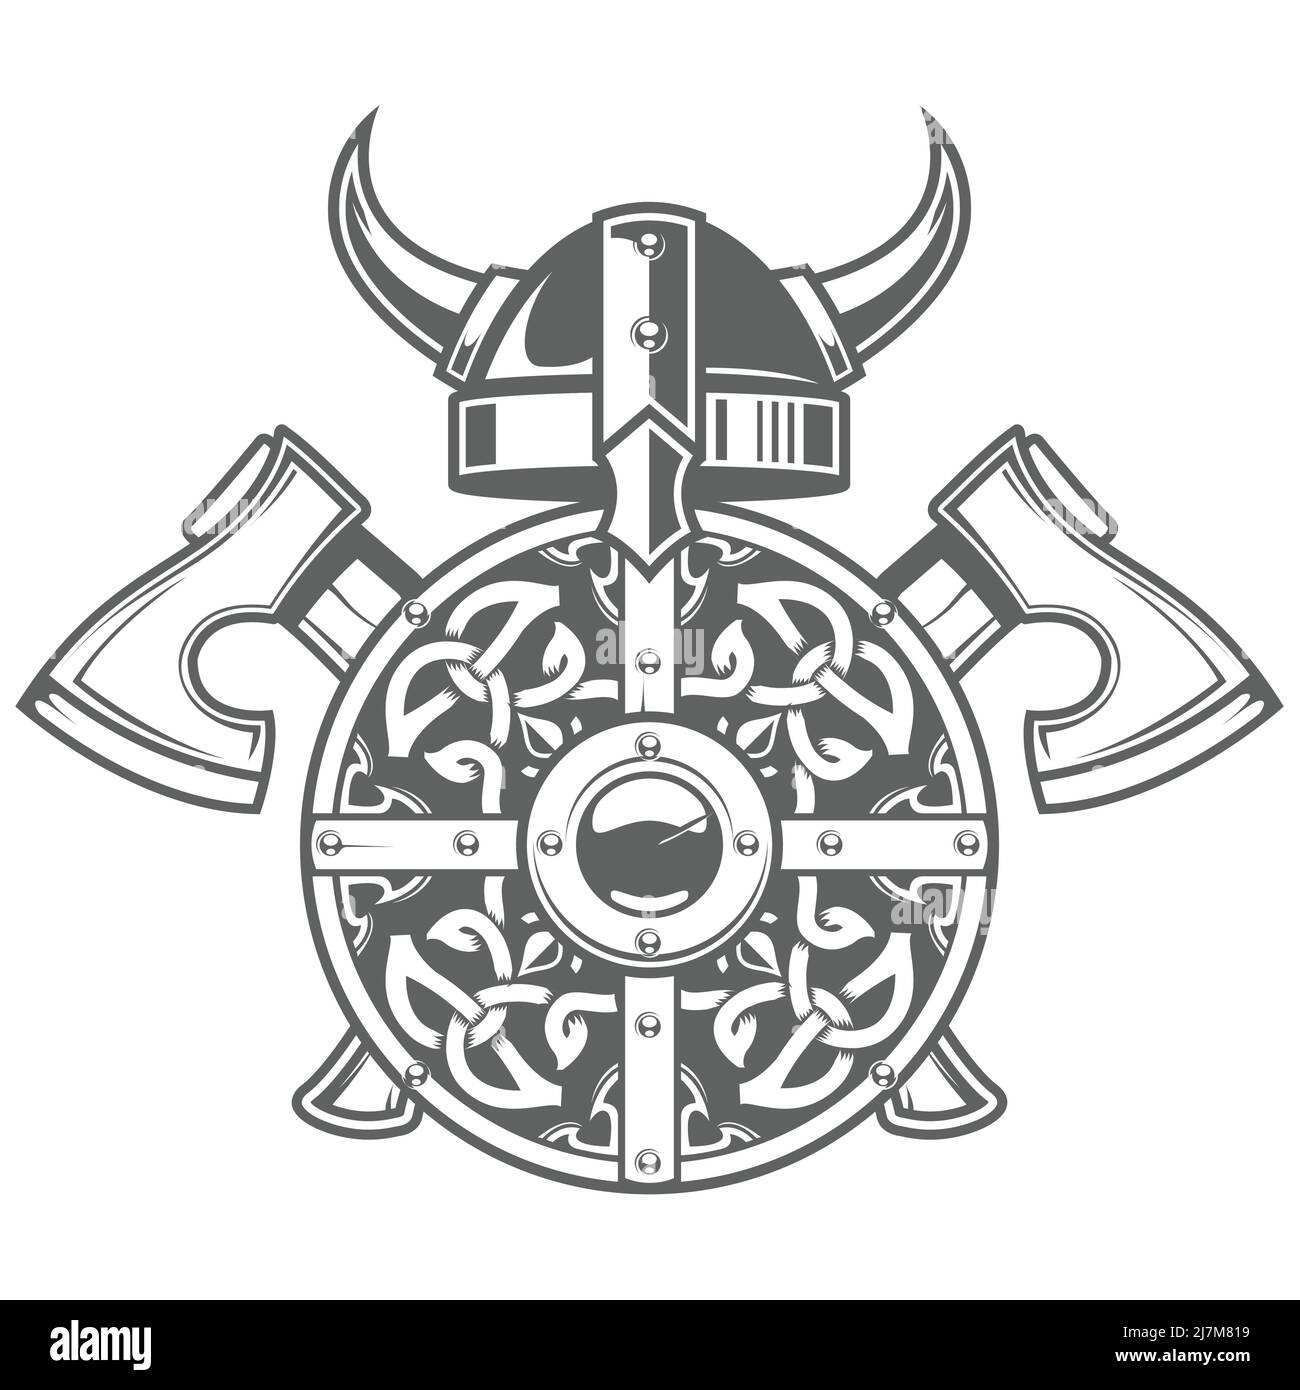 Rundes wikingerschild mit keltischem Muster, gehörntem Barbaren-Helm und zwei gekreuzten Äxten, skandinavischer Rüstung, Vektor Stock Vektor